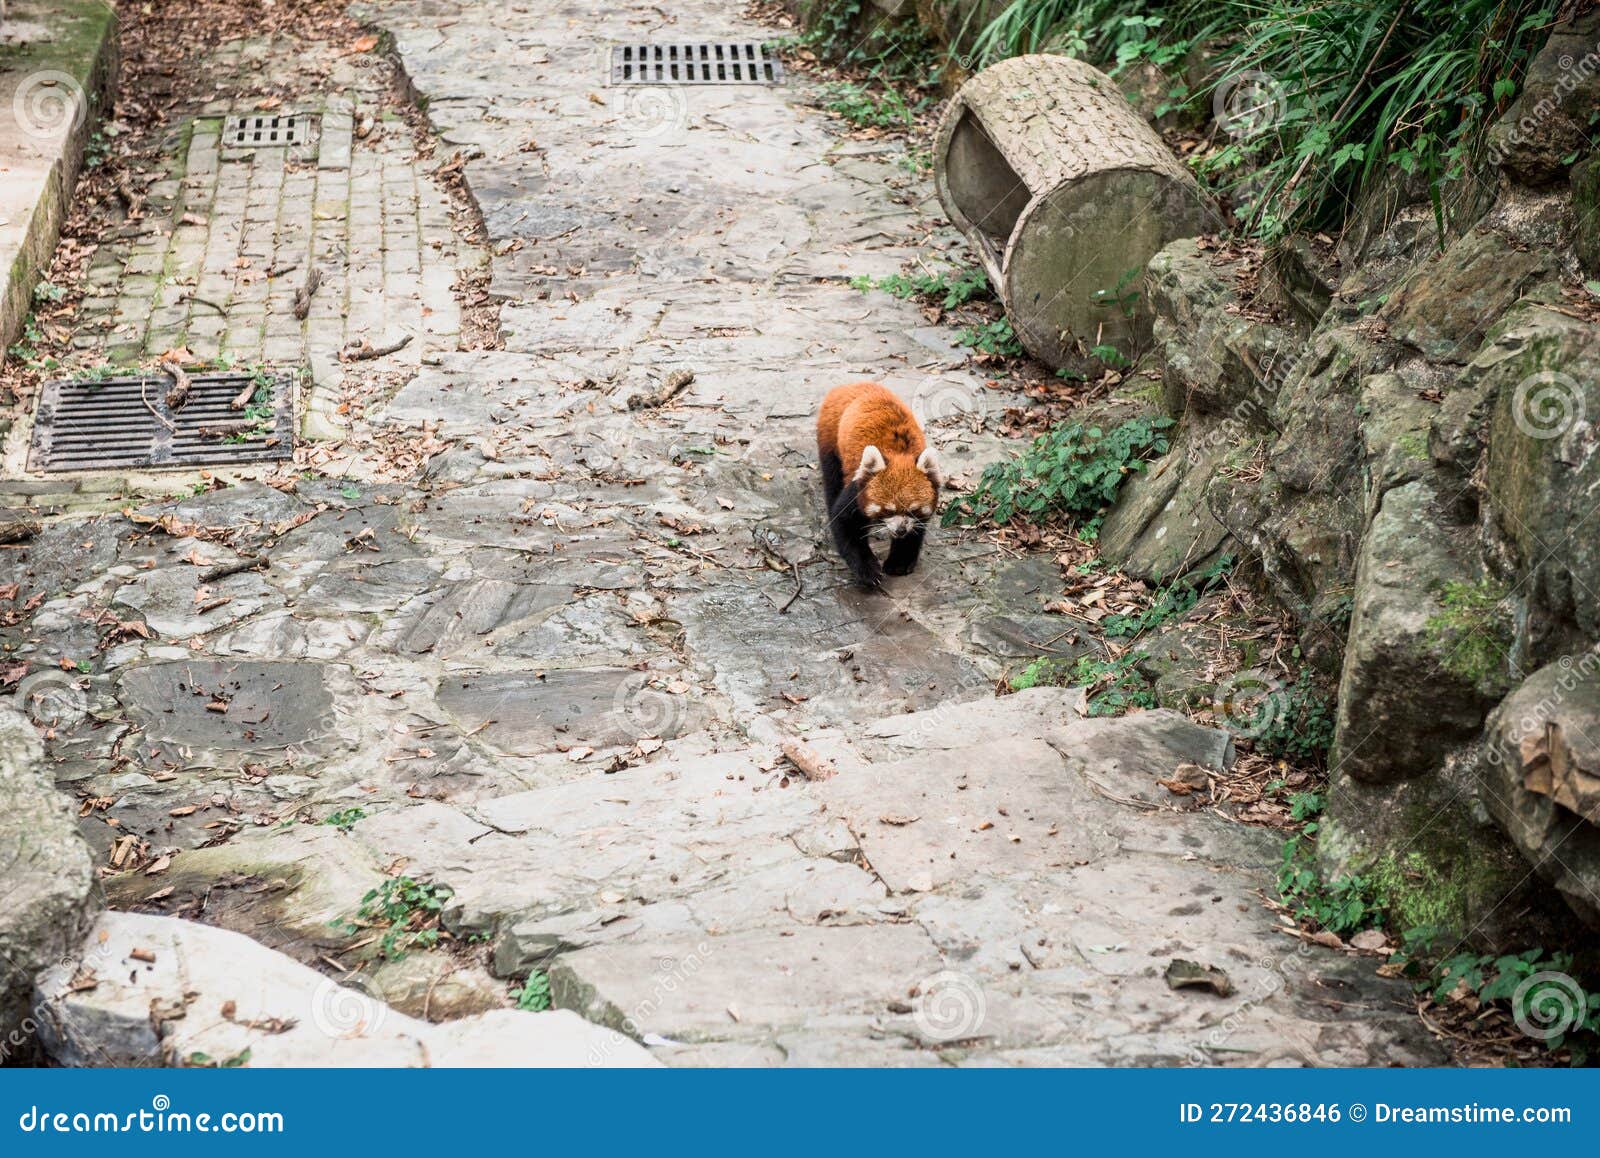 the red panda or firefox in the hangzhou zoo